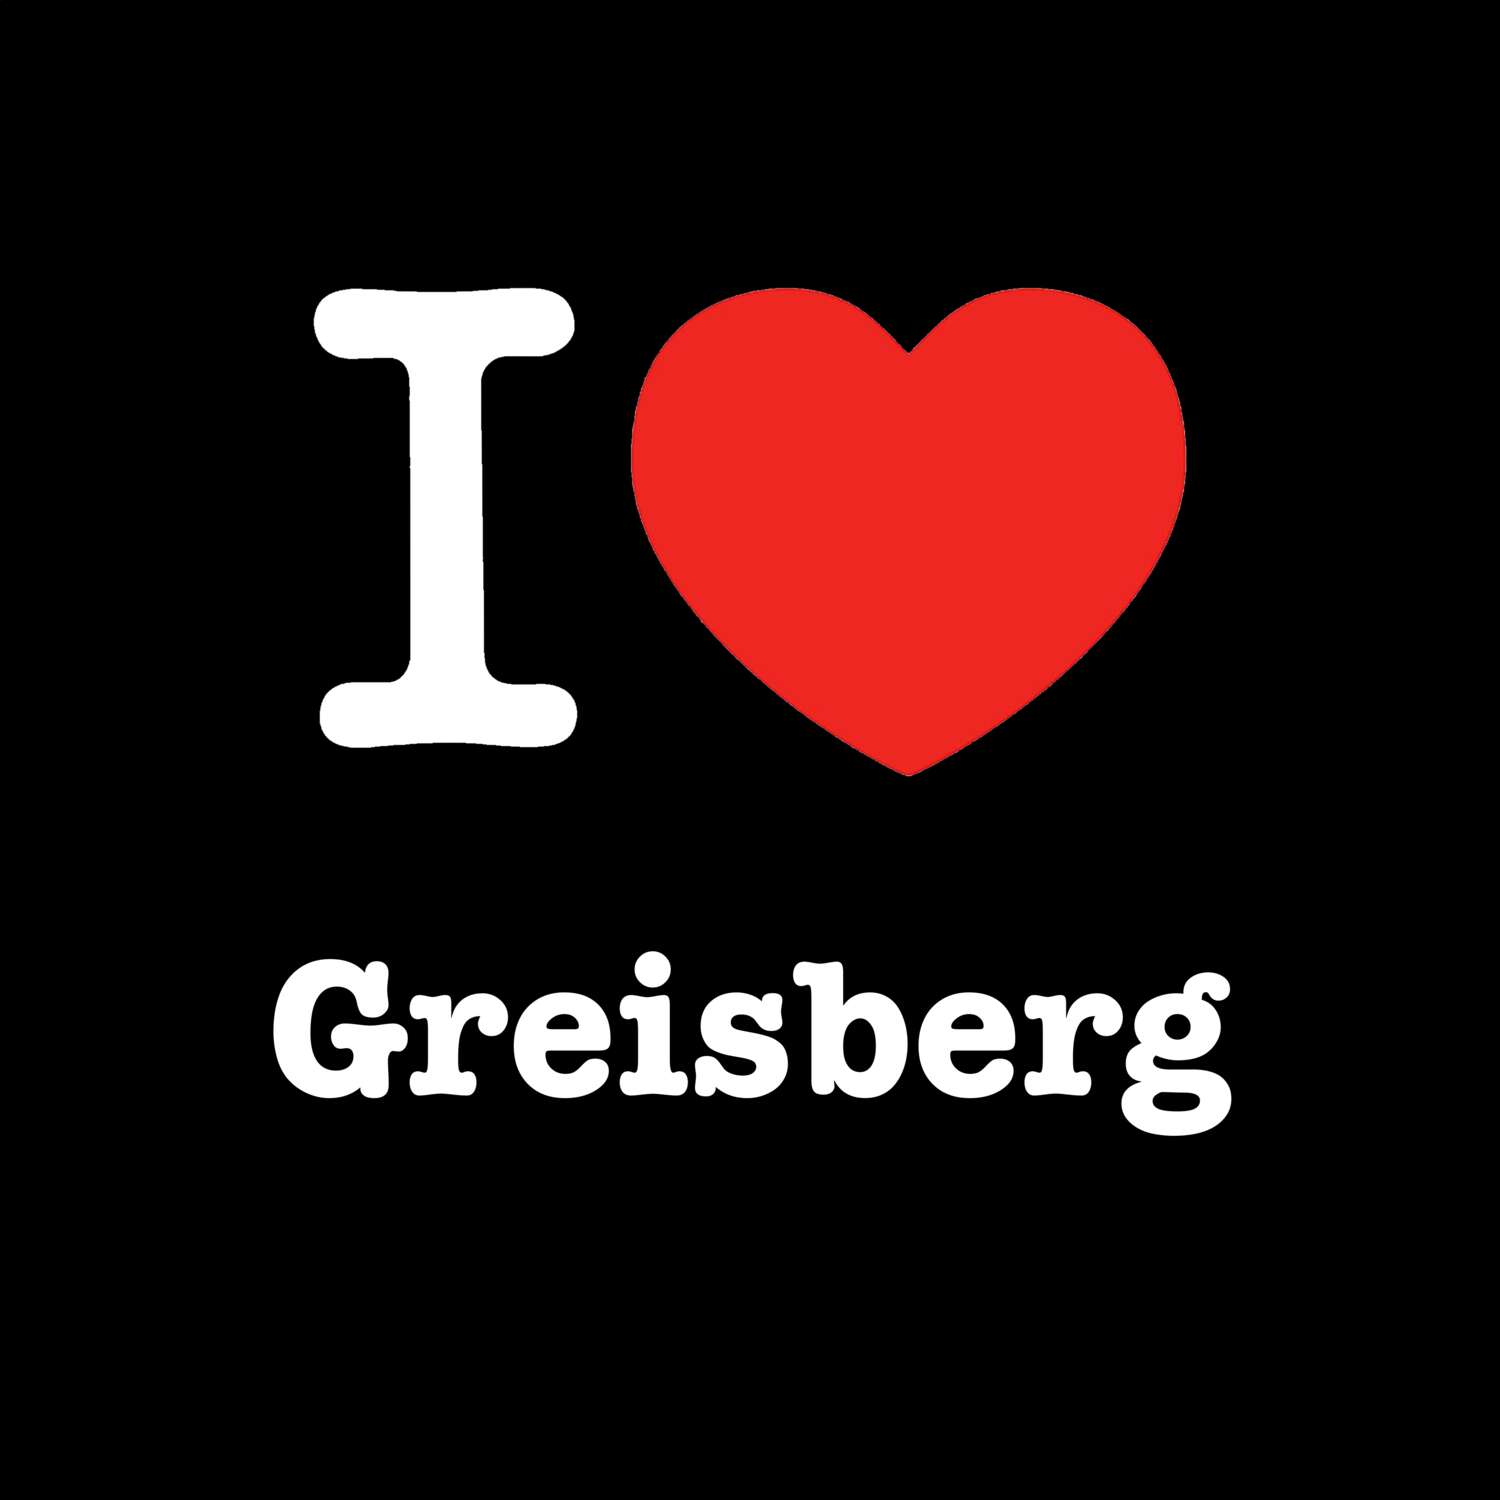 Greisberg T-Shirt »I love«